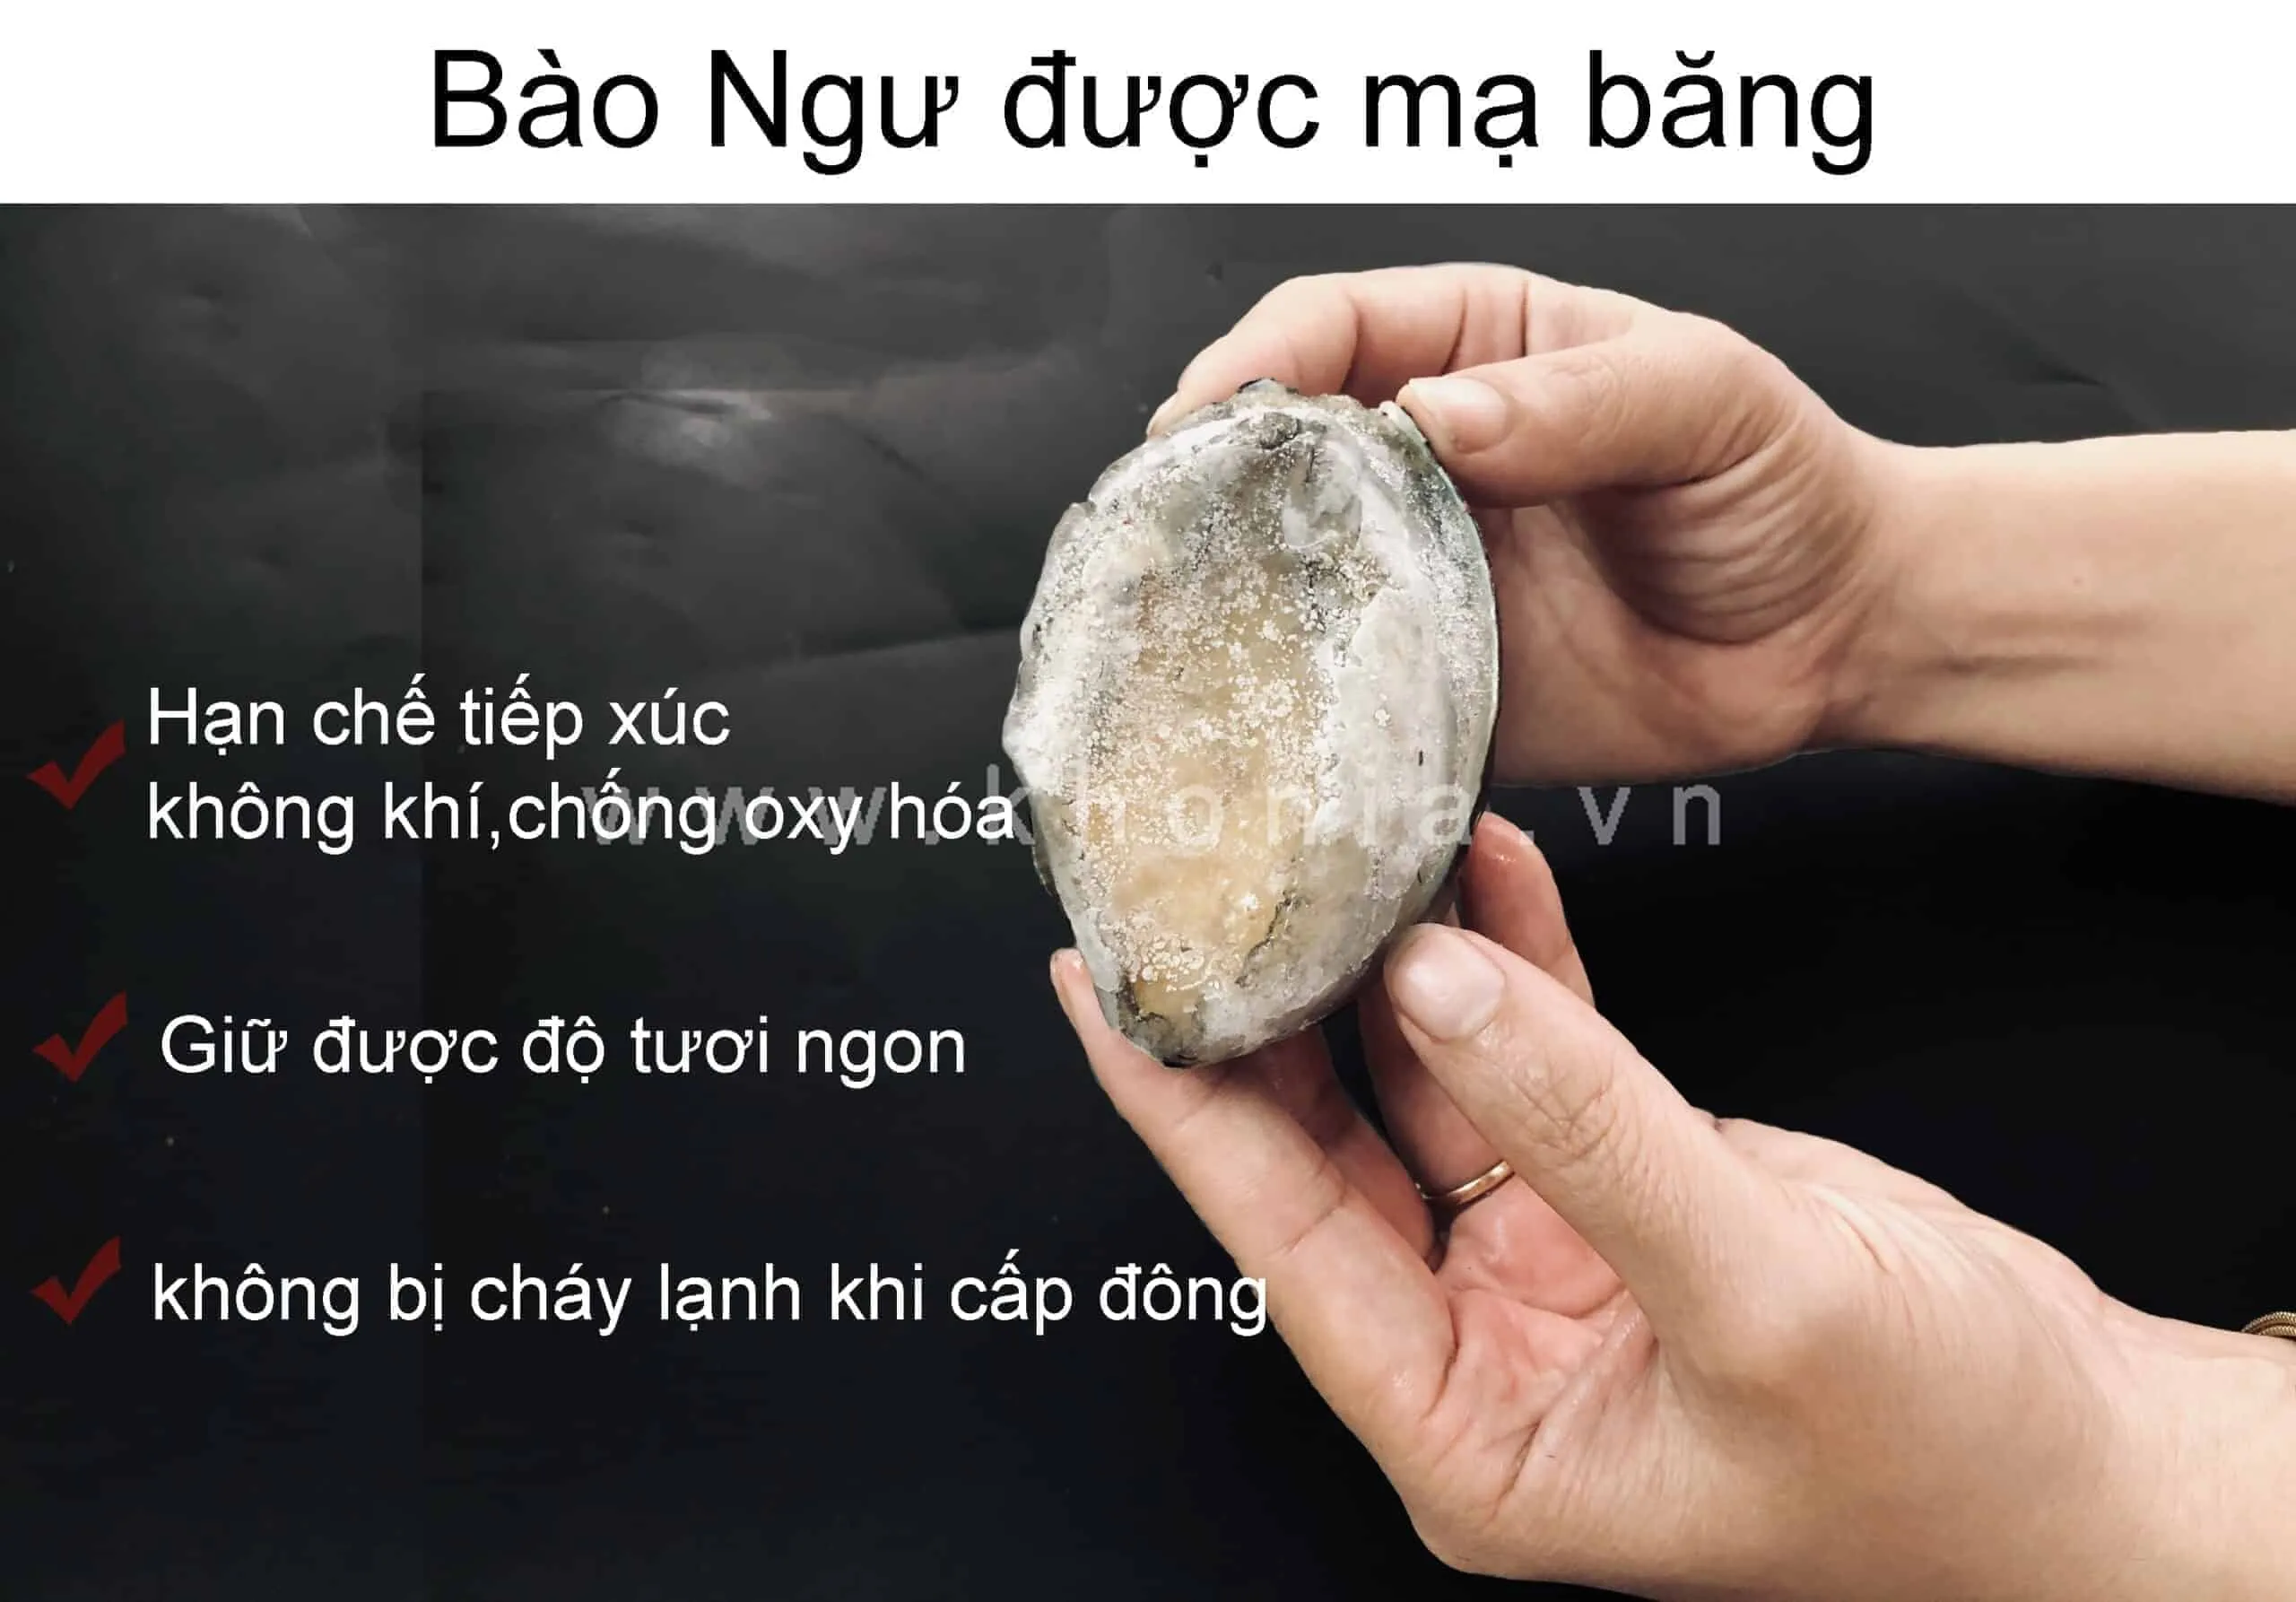 Bao-Ngu-Han-Quoc